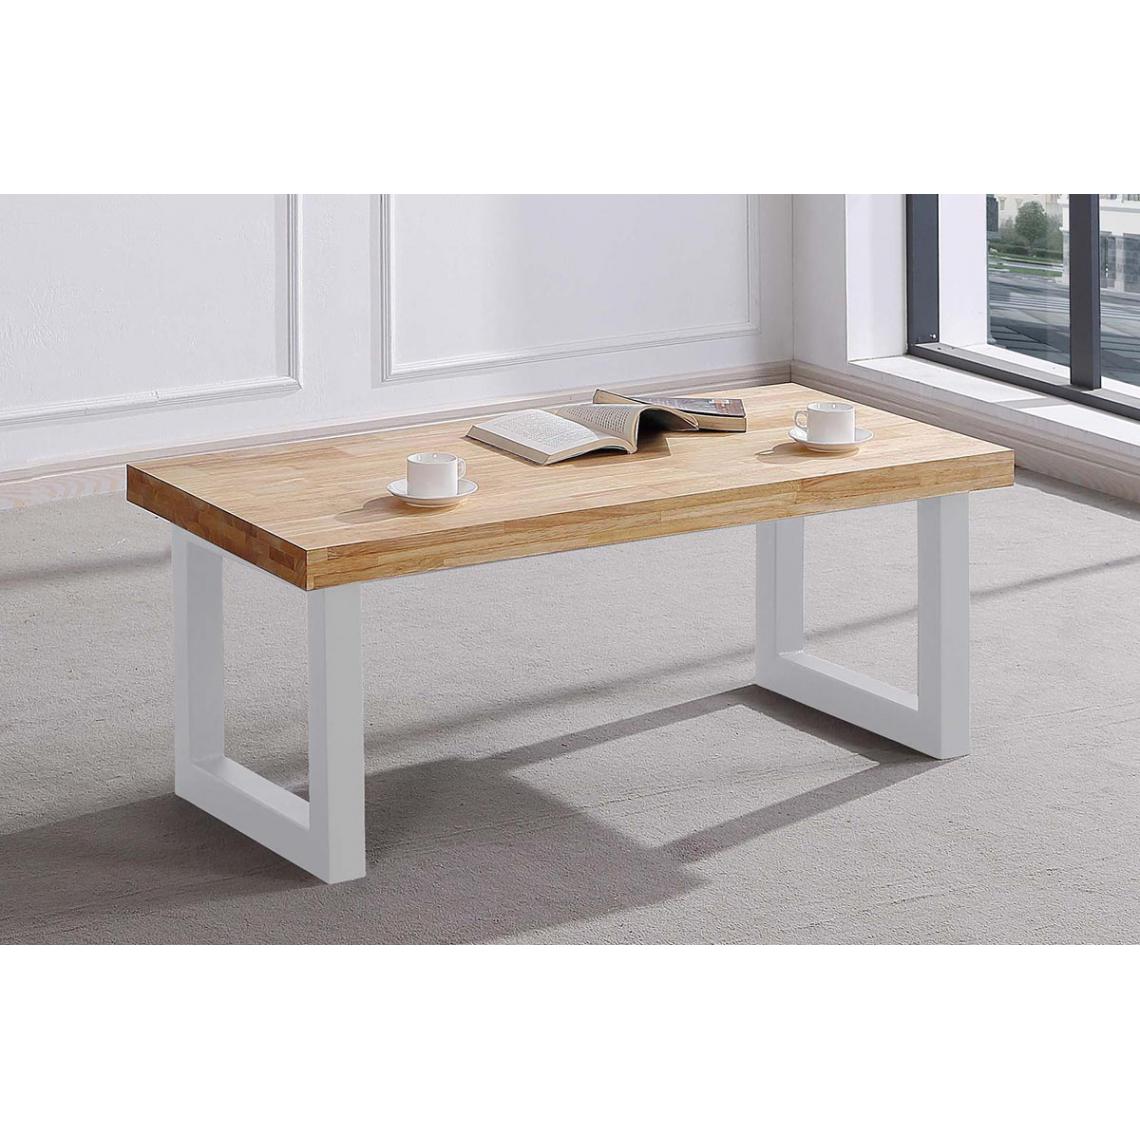 Pegane - Table basse relevable en bois coloris chêne nordique / pieds blanc -Longueur 120 x profondeur 60 x hauteur 47 cm - Tables basses